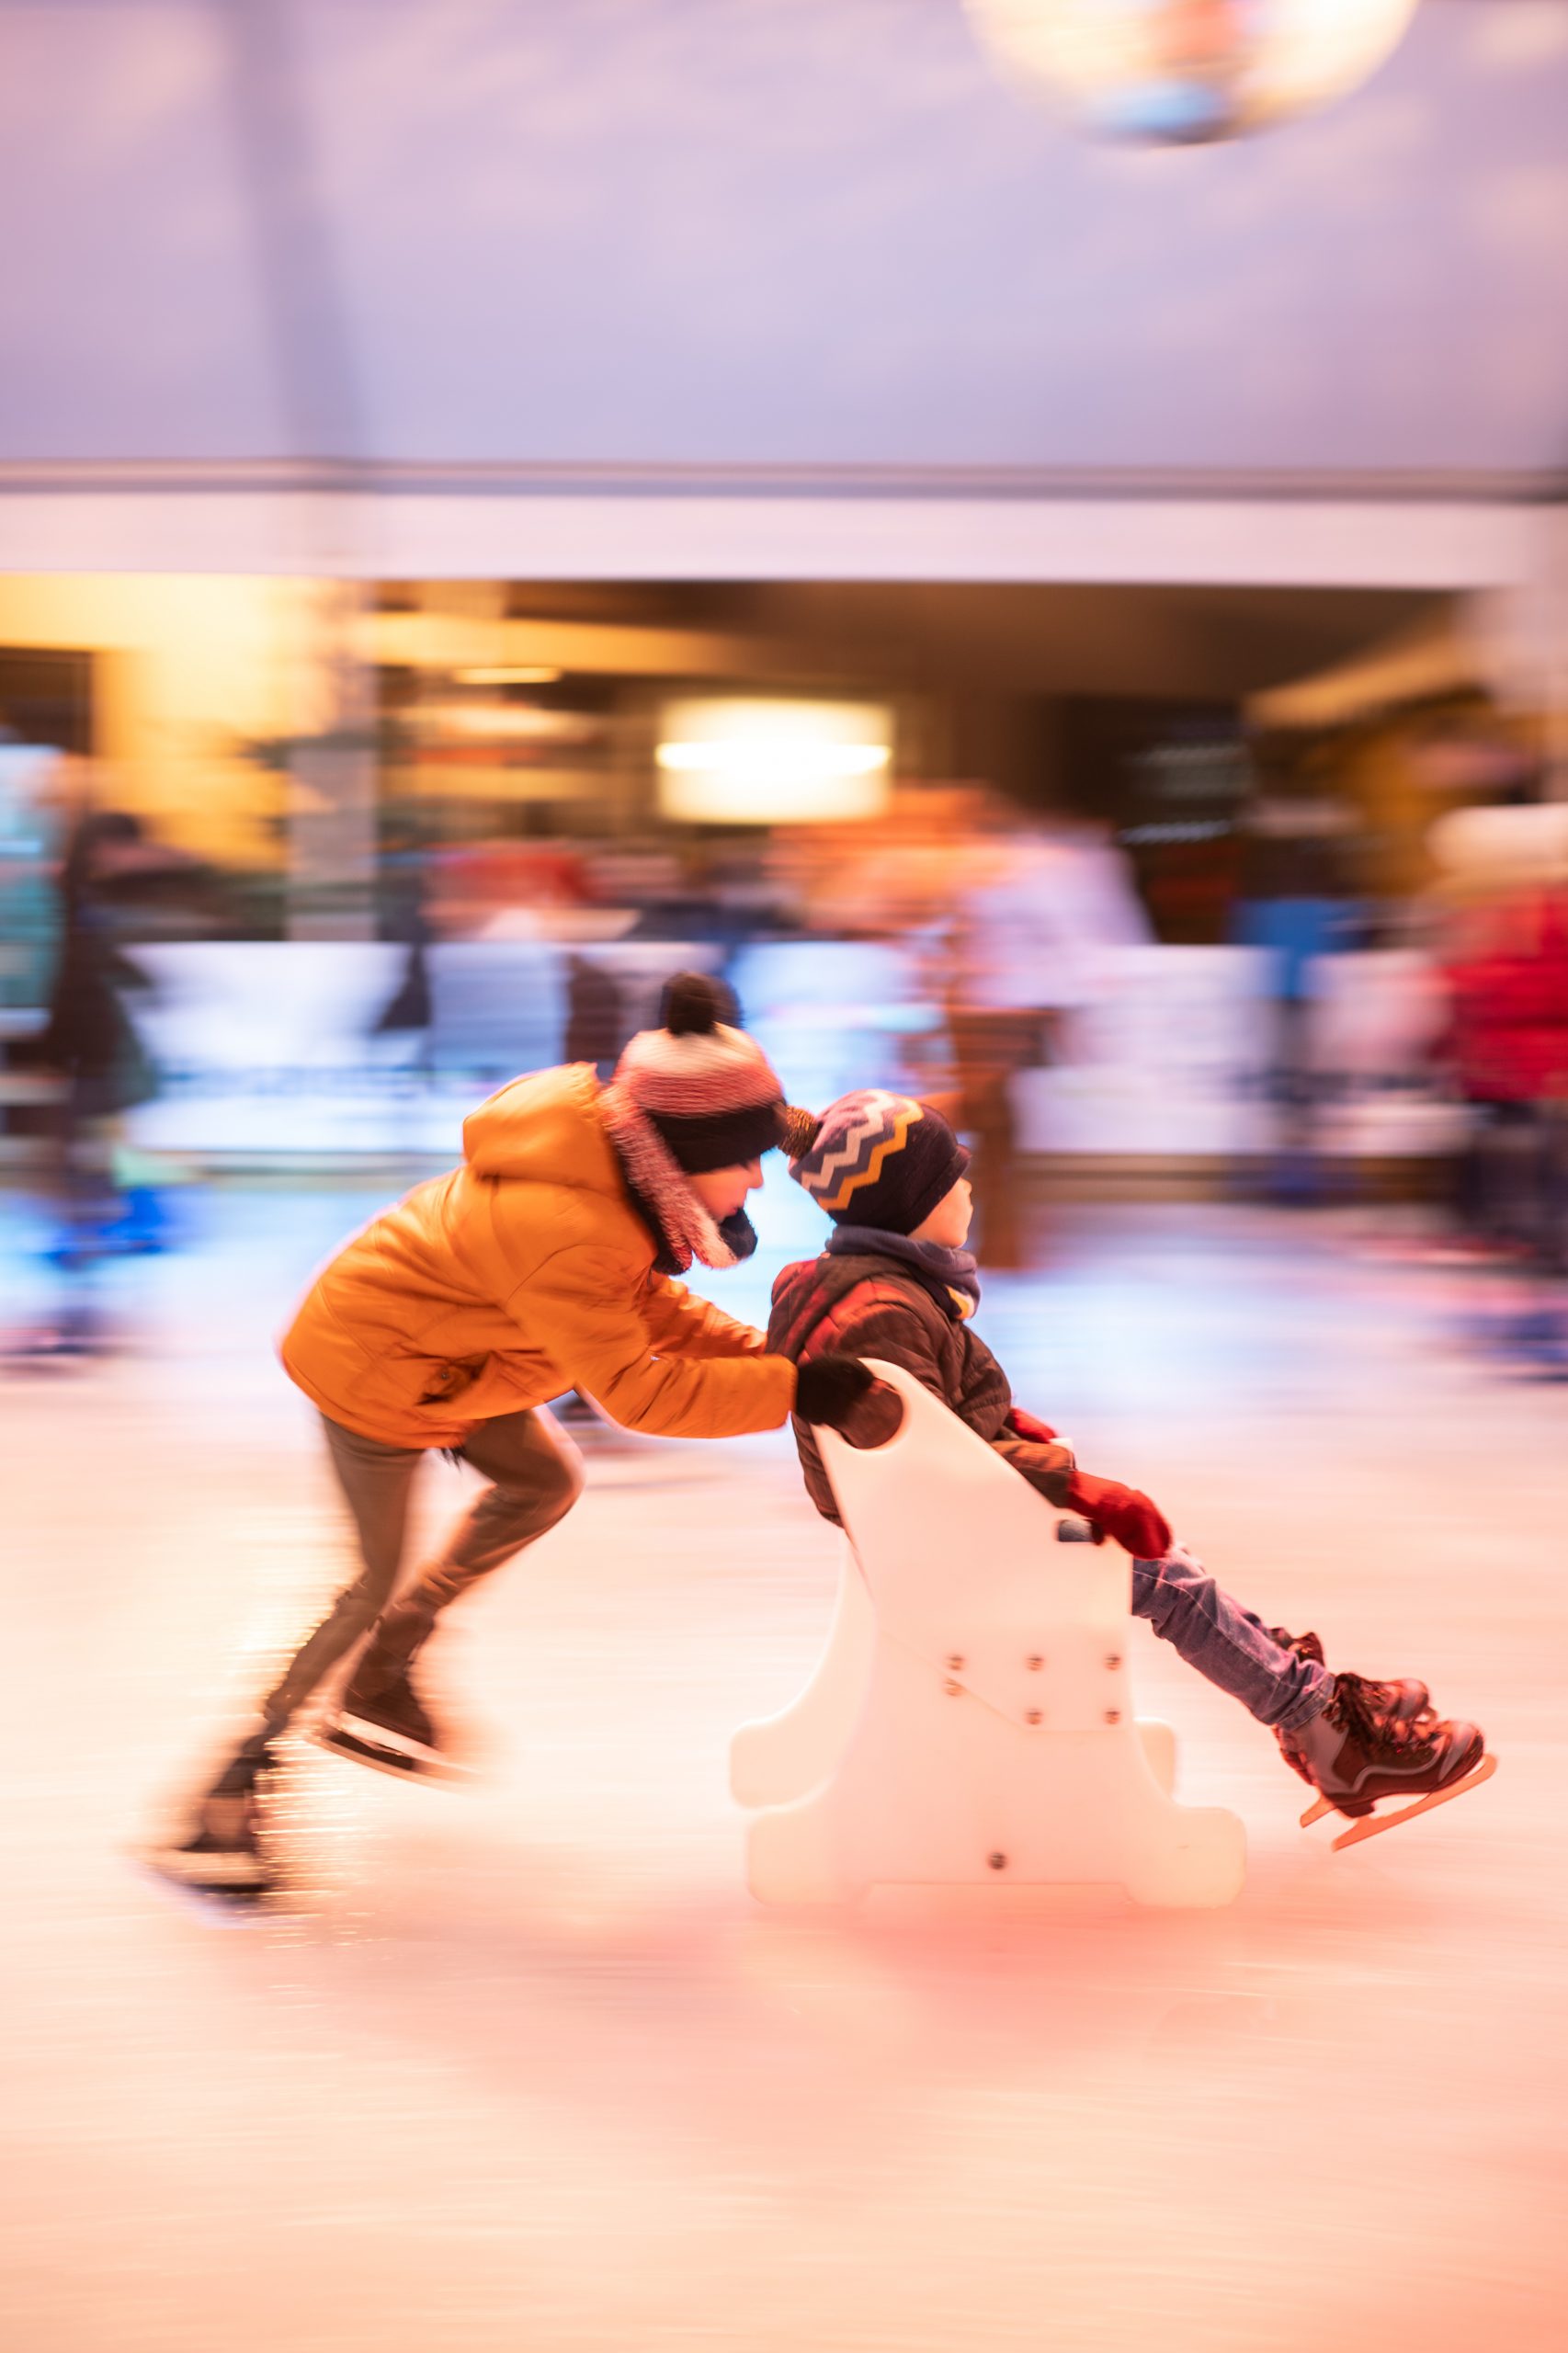 La patinoire de Noël